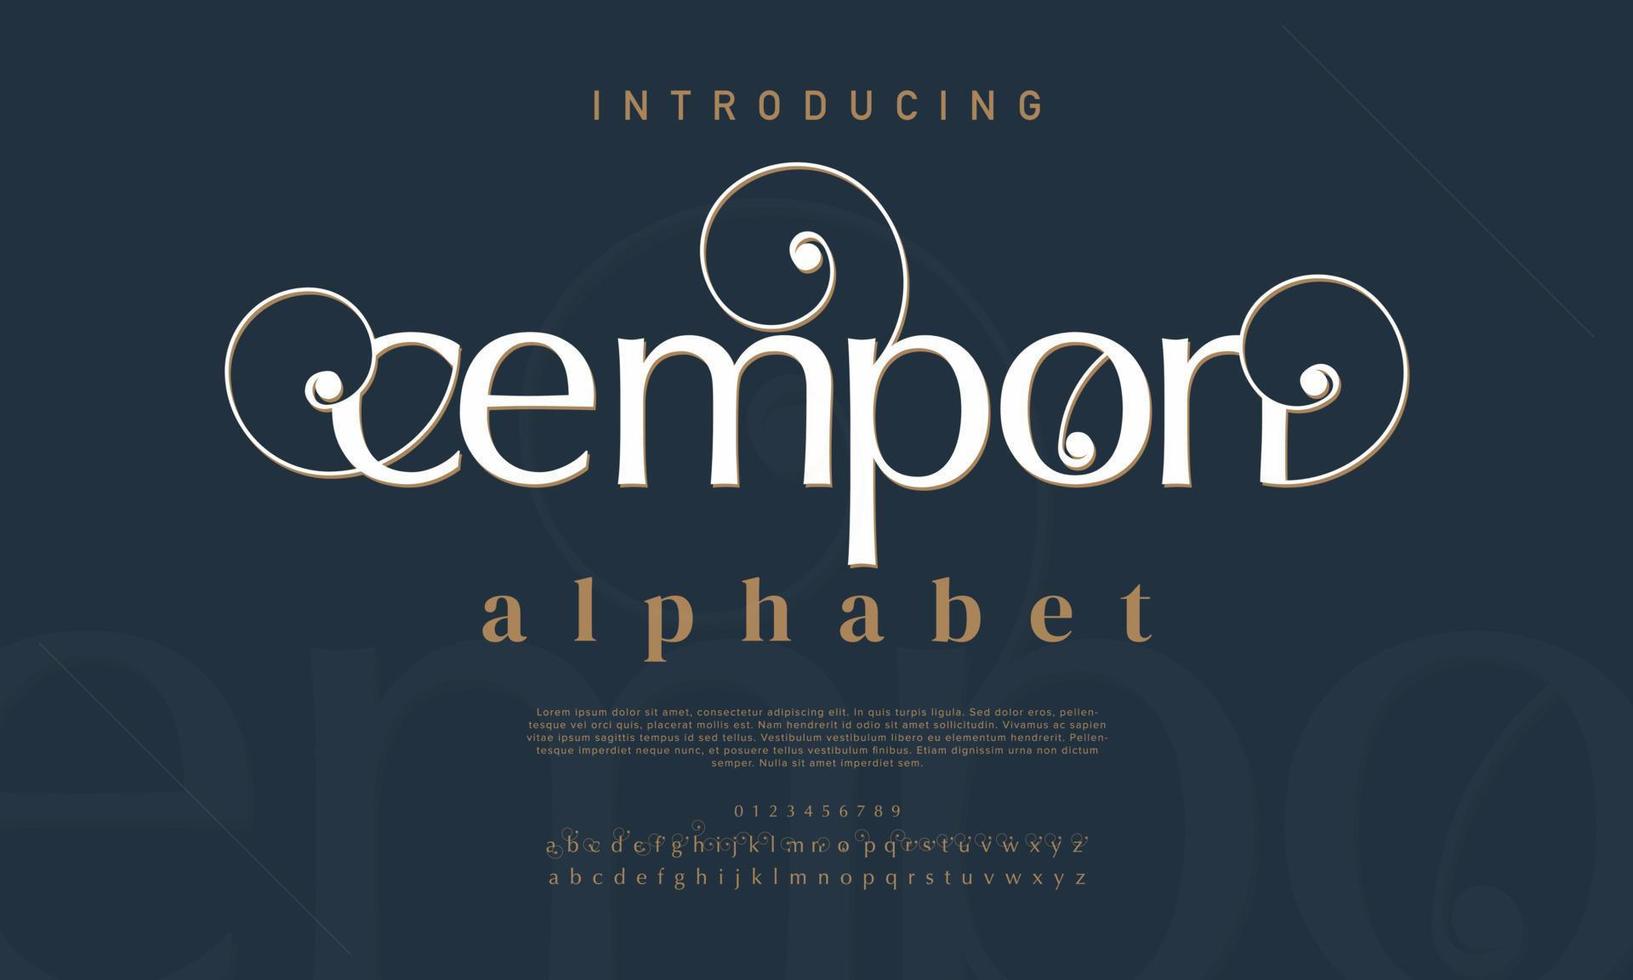 cempon abstract mode doopvont alfabet. minimaal modern stedelijk fonts voor logo, merk enz. typografie lettertype hoofdletters kleine letters en nummer. vector illustratie